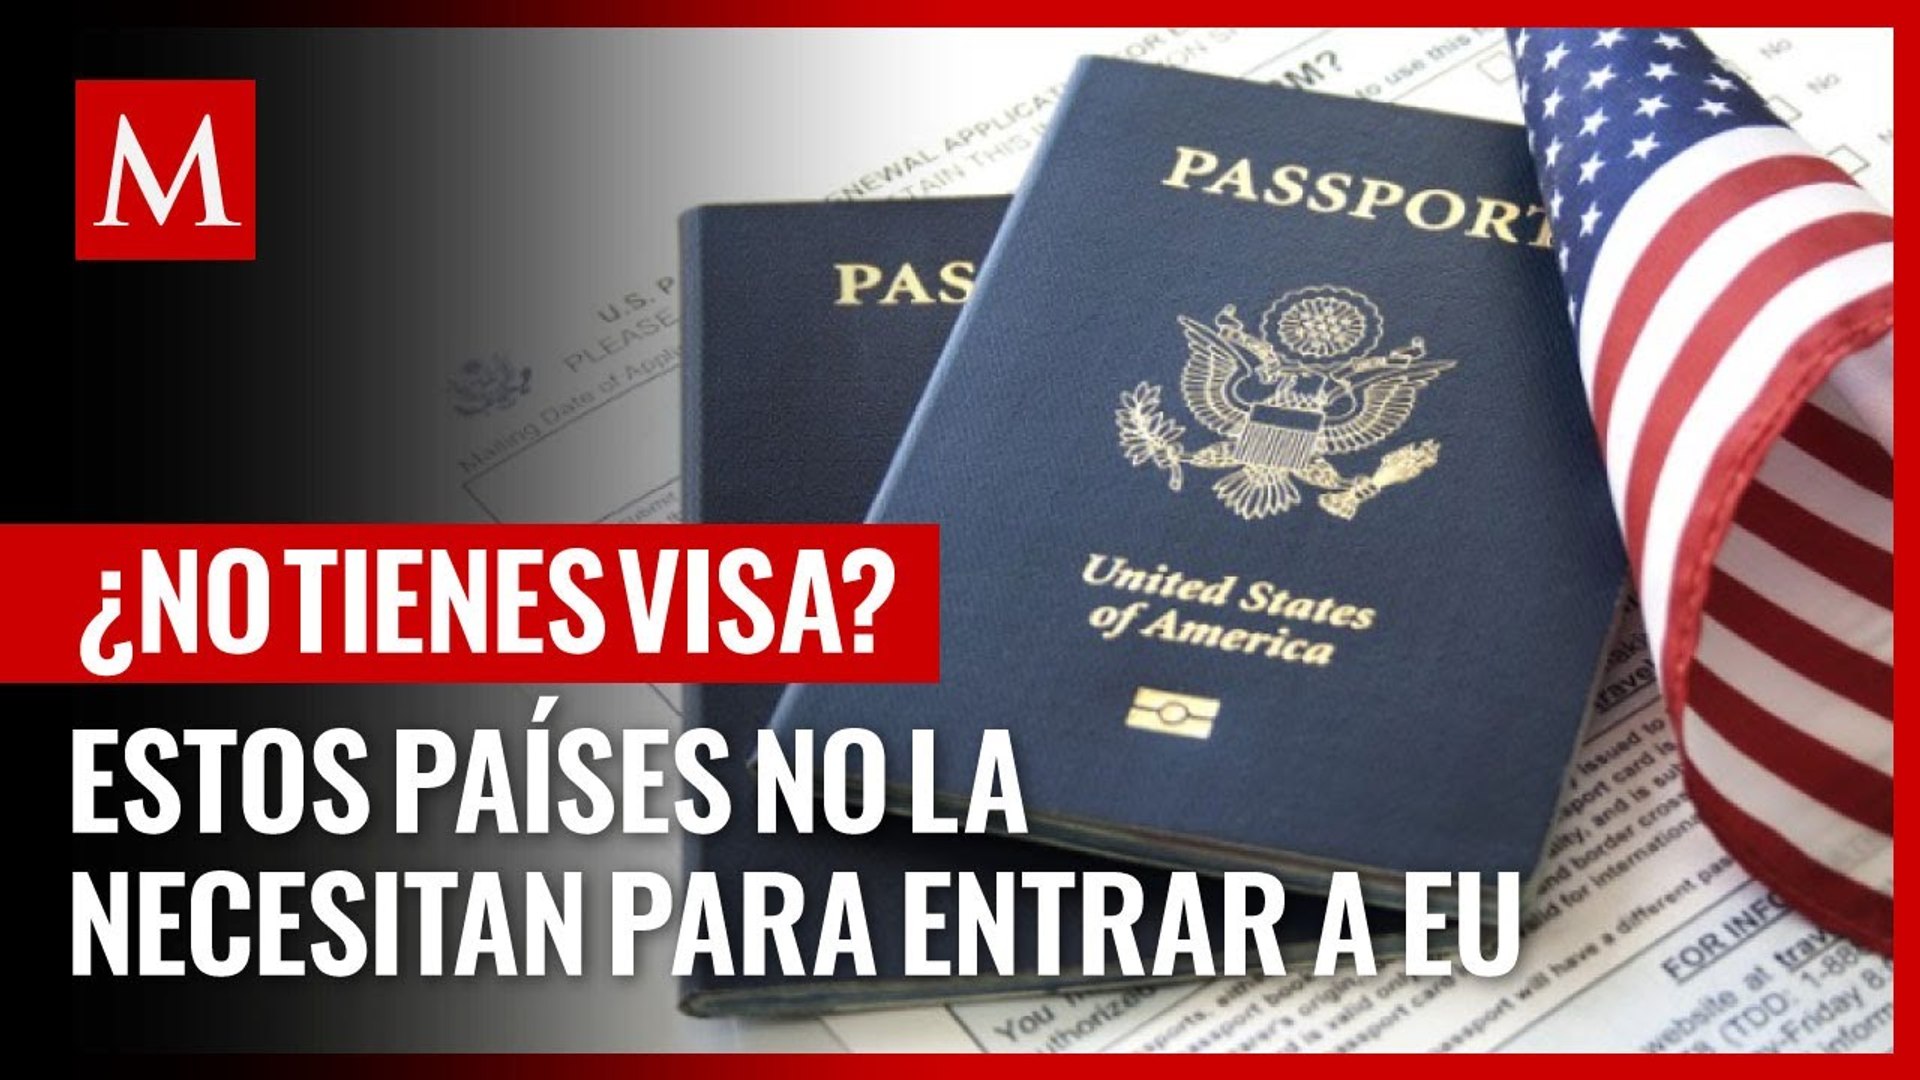 Lo sabías? Estos países no necesitan visa para entrar a Estados Unidos -  Vídeo Dailymotion